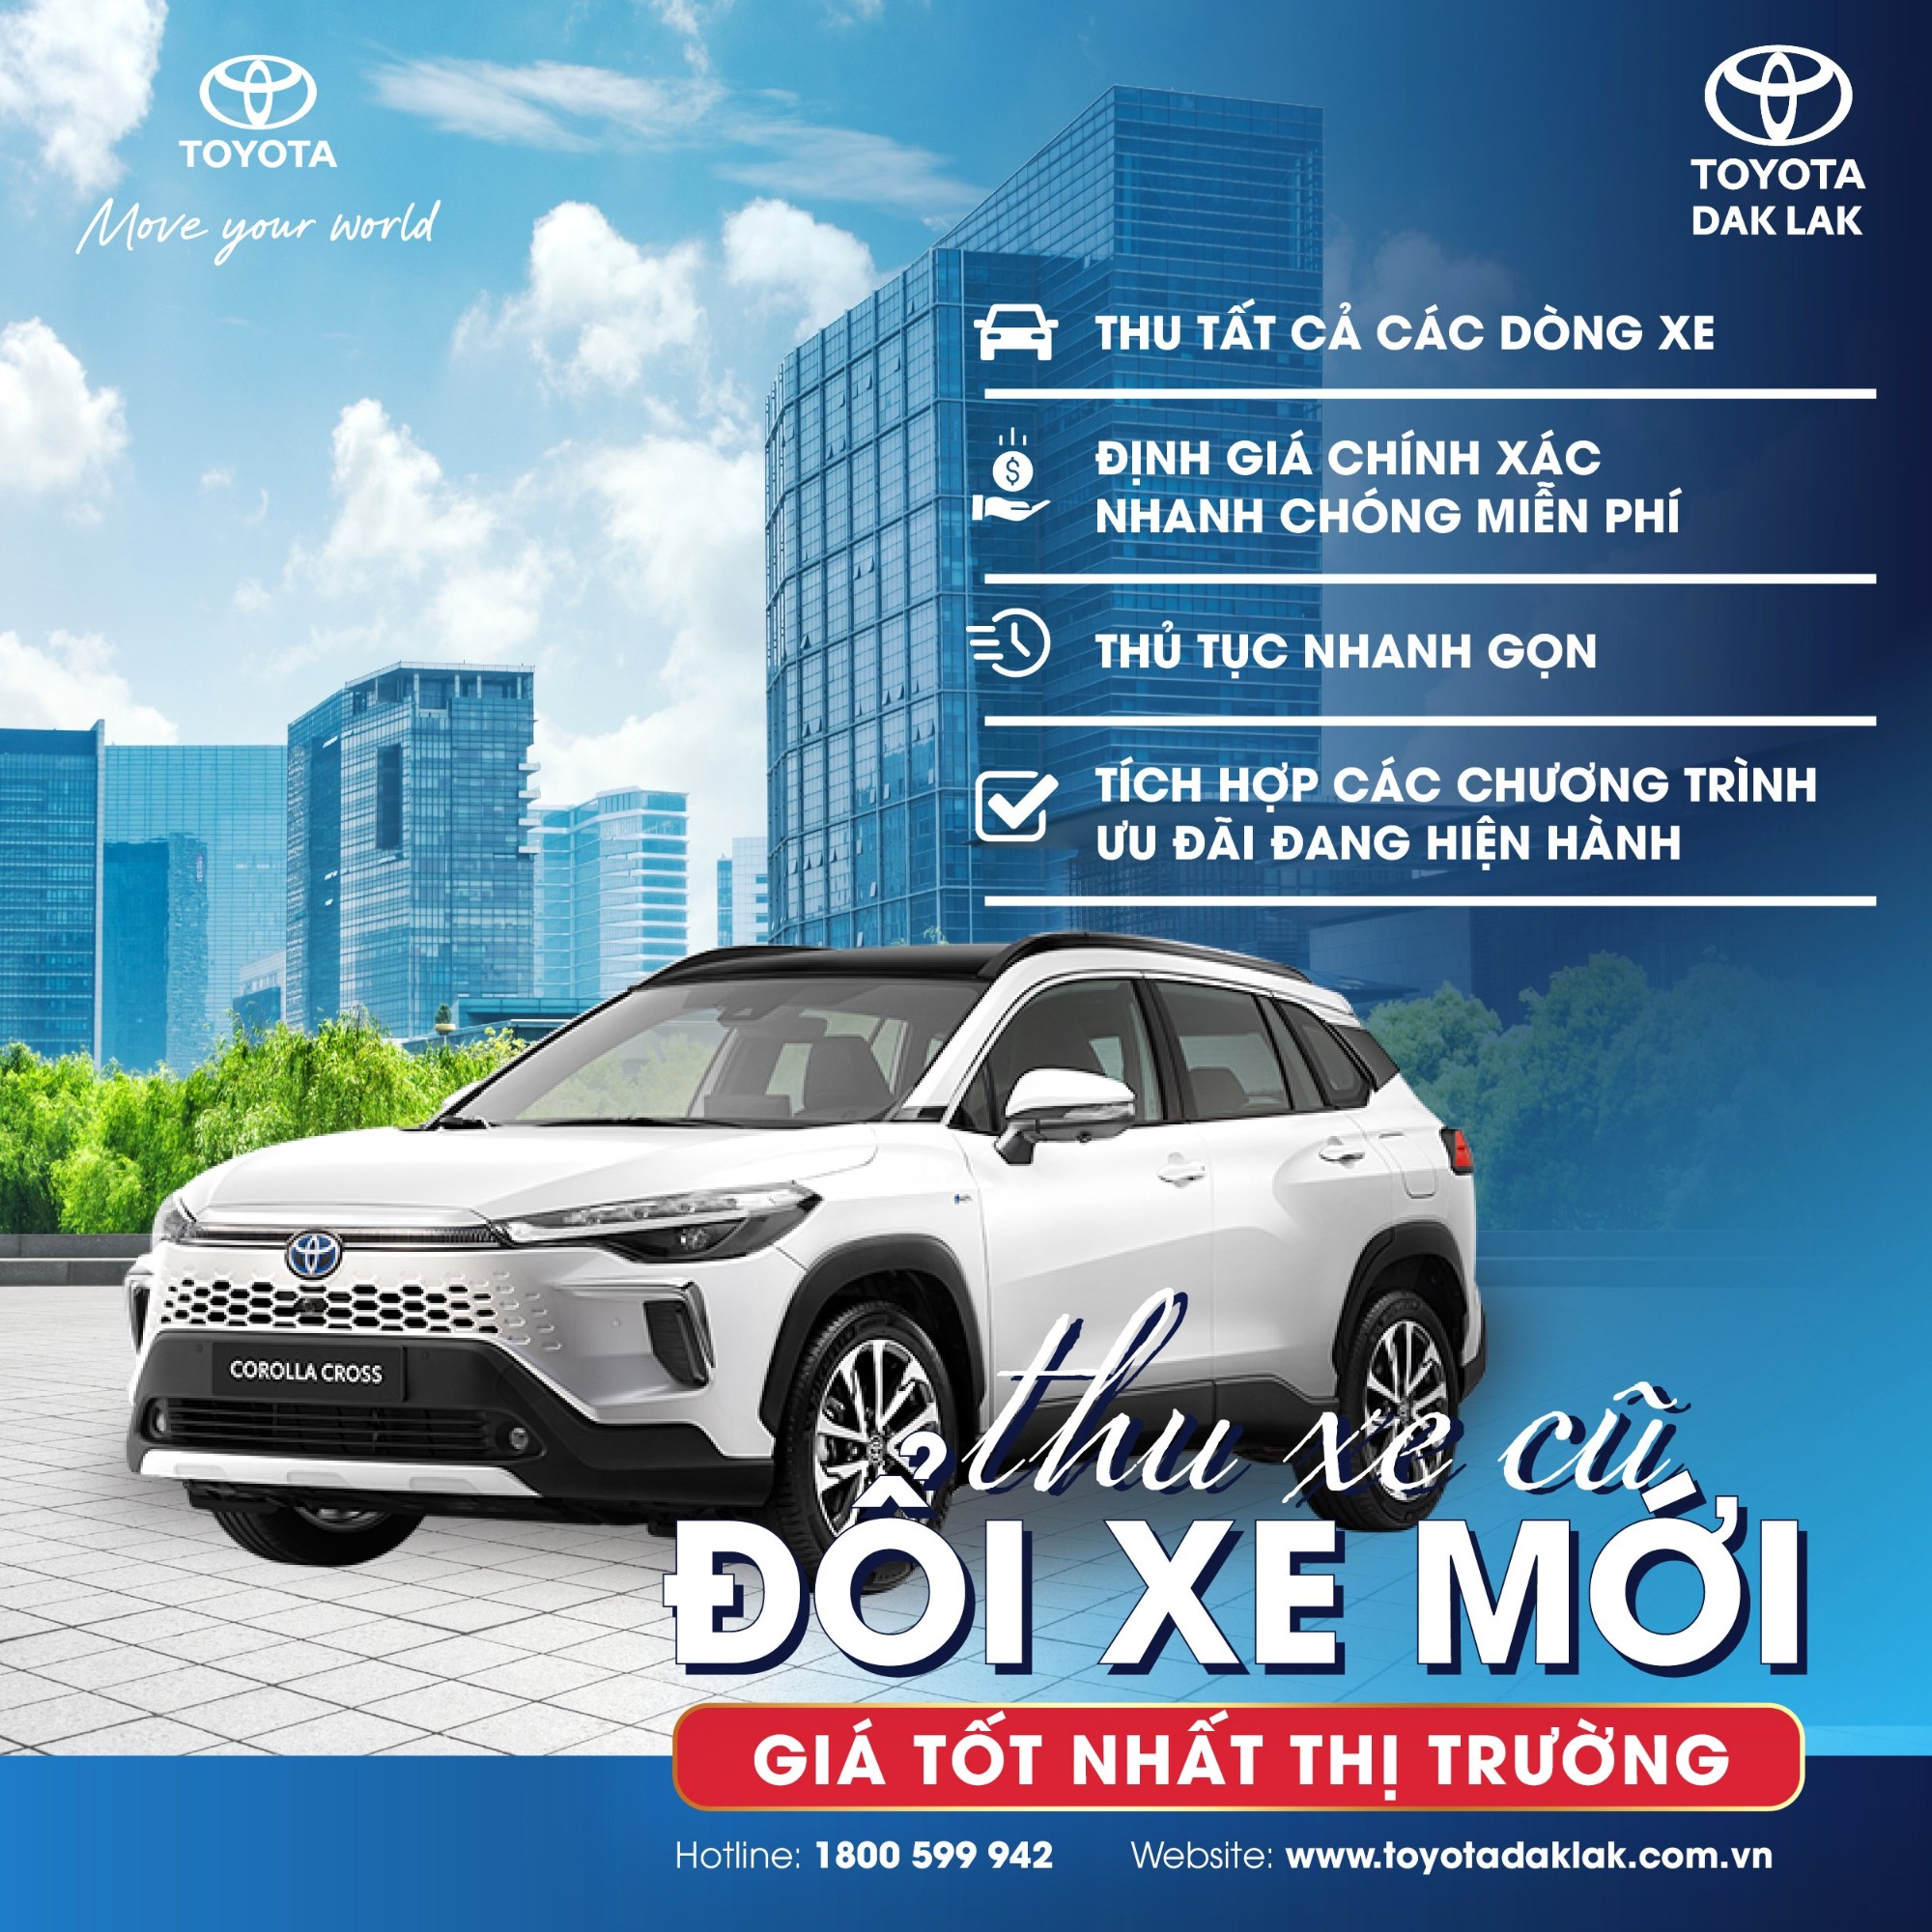 Thu xe cũ - Đổi xe mới tại Toyota Dak Lak: Lựa chọn thông minh, tiết kiệm tối ưu!